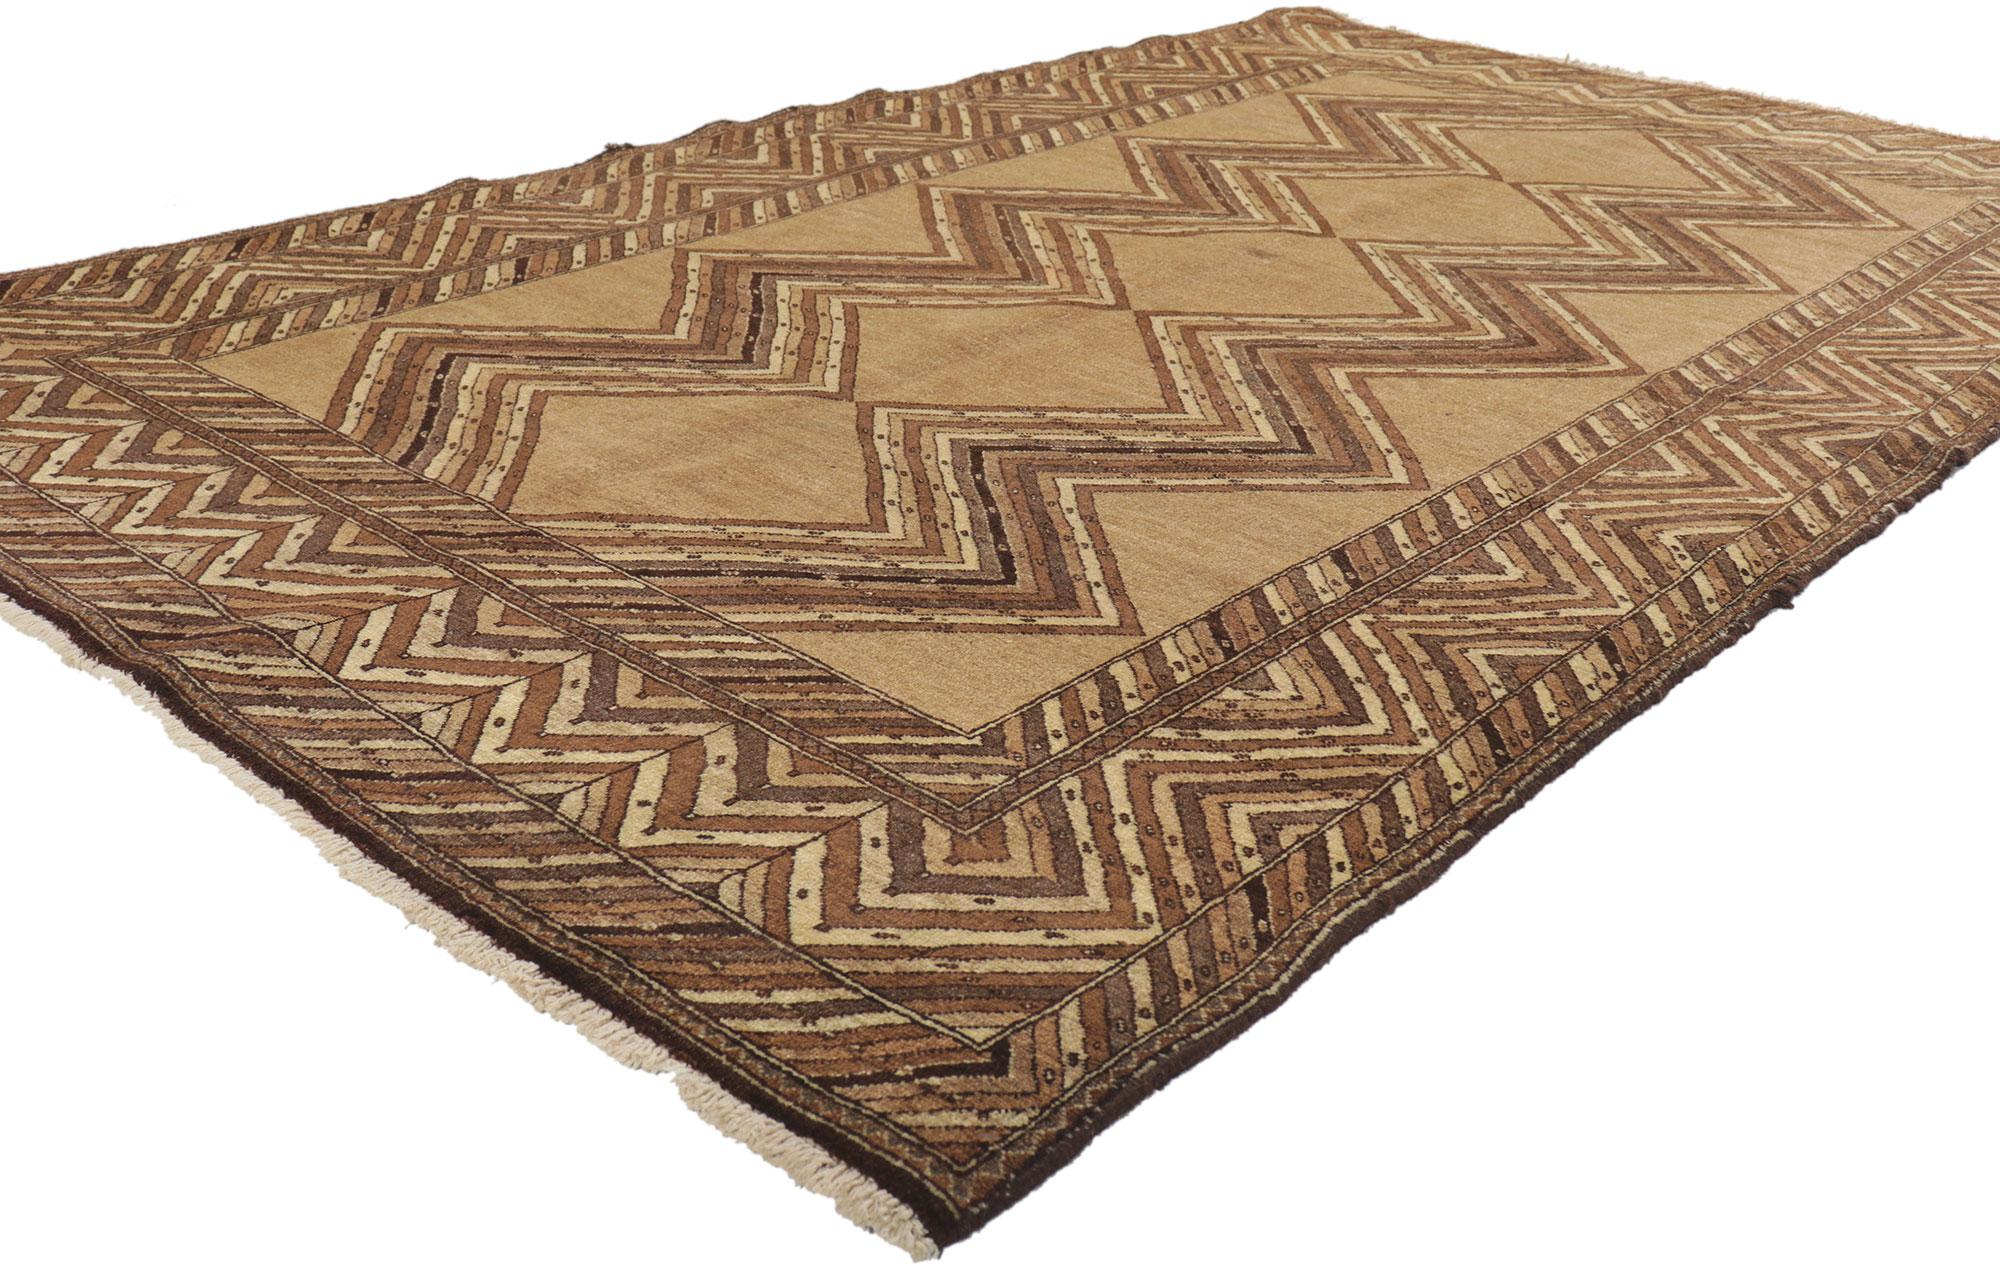 75143 Tapis persan vintage Semnan, 04'05 x 07'07.
Emanant d'un charme nomade avec des détails et une texture incroyables, ce tapis persan Semnan vintage en laine noué à la main est une vision captivante de la beauté tissée. Le design tribal et les